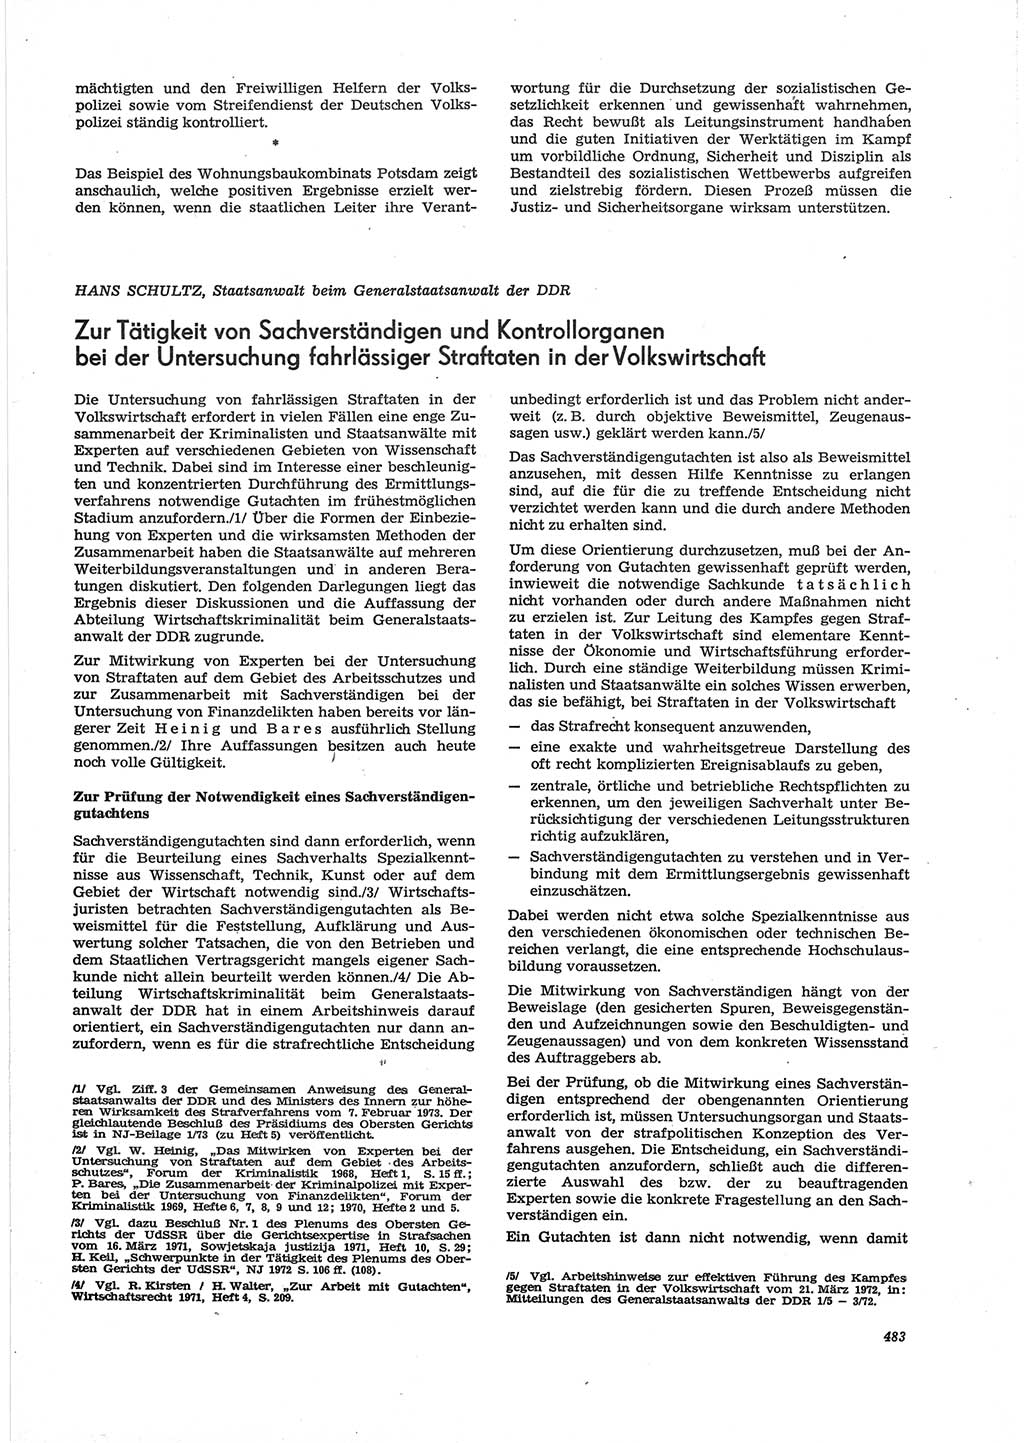 Neue Justiz (NJ), Zeitschrift für Recht und Rechtswissenschaft [Deutsche Demokratische Republik (DDR)], 28. Jahrgang 1974, Seite 483 (NJ DDR 1974, S. 483)